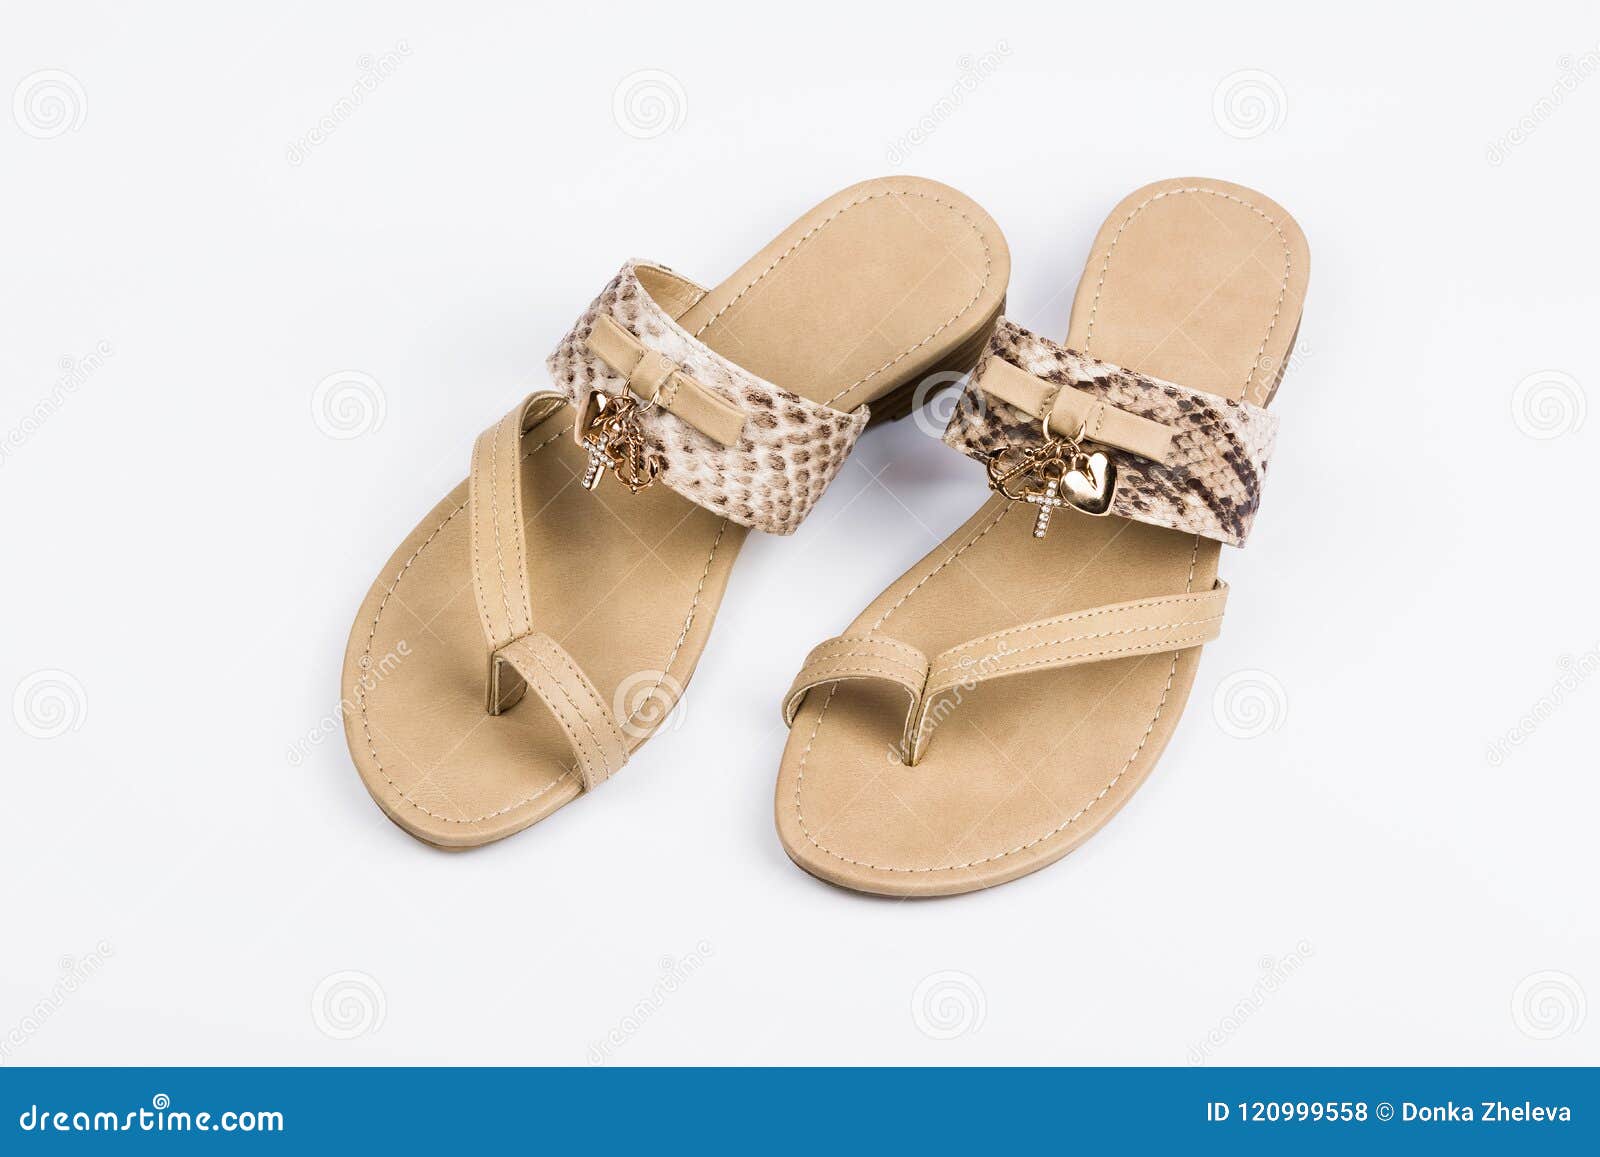 women`s sandals on white background. summer fashion